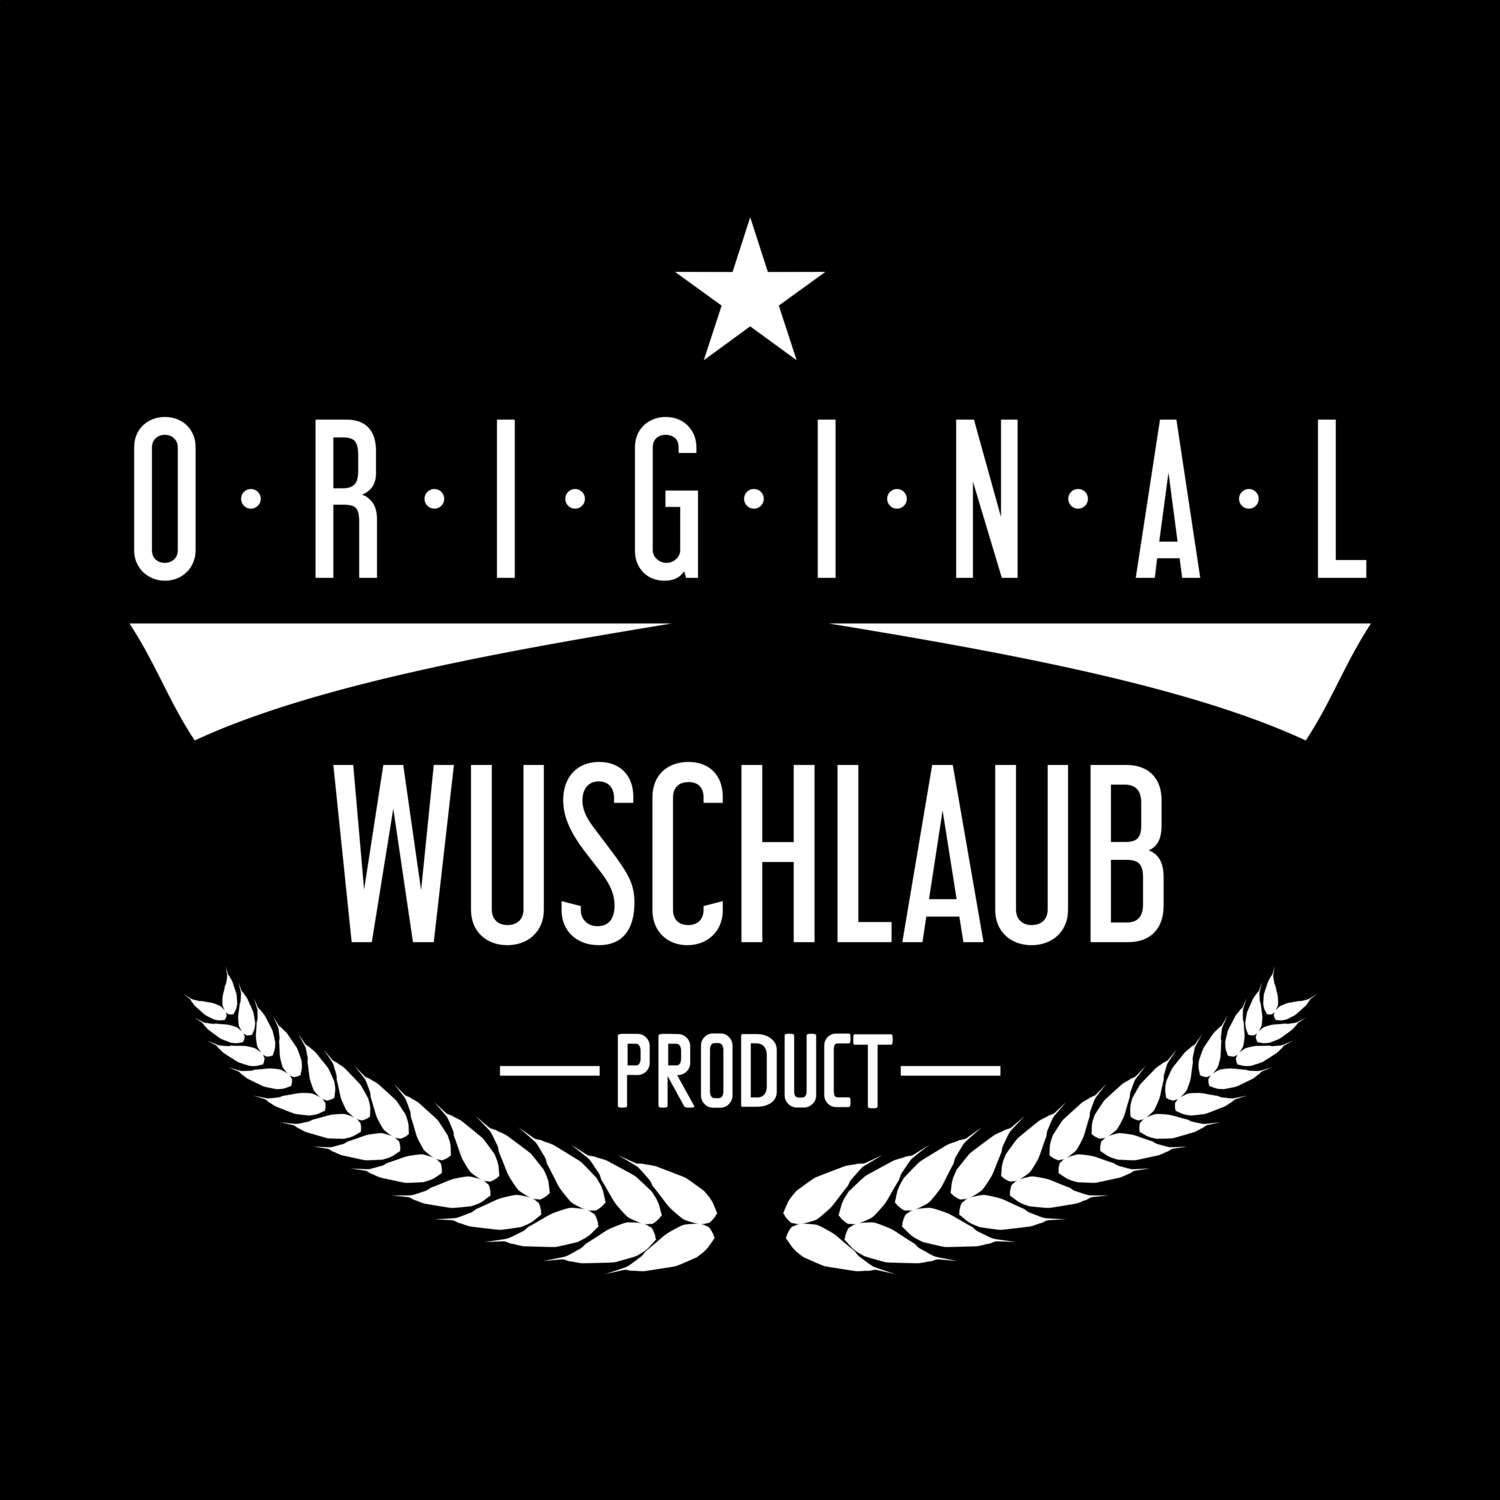 Wuschlaub T-Shirt »Original Product«